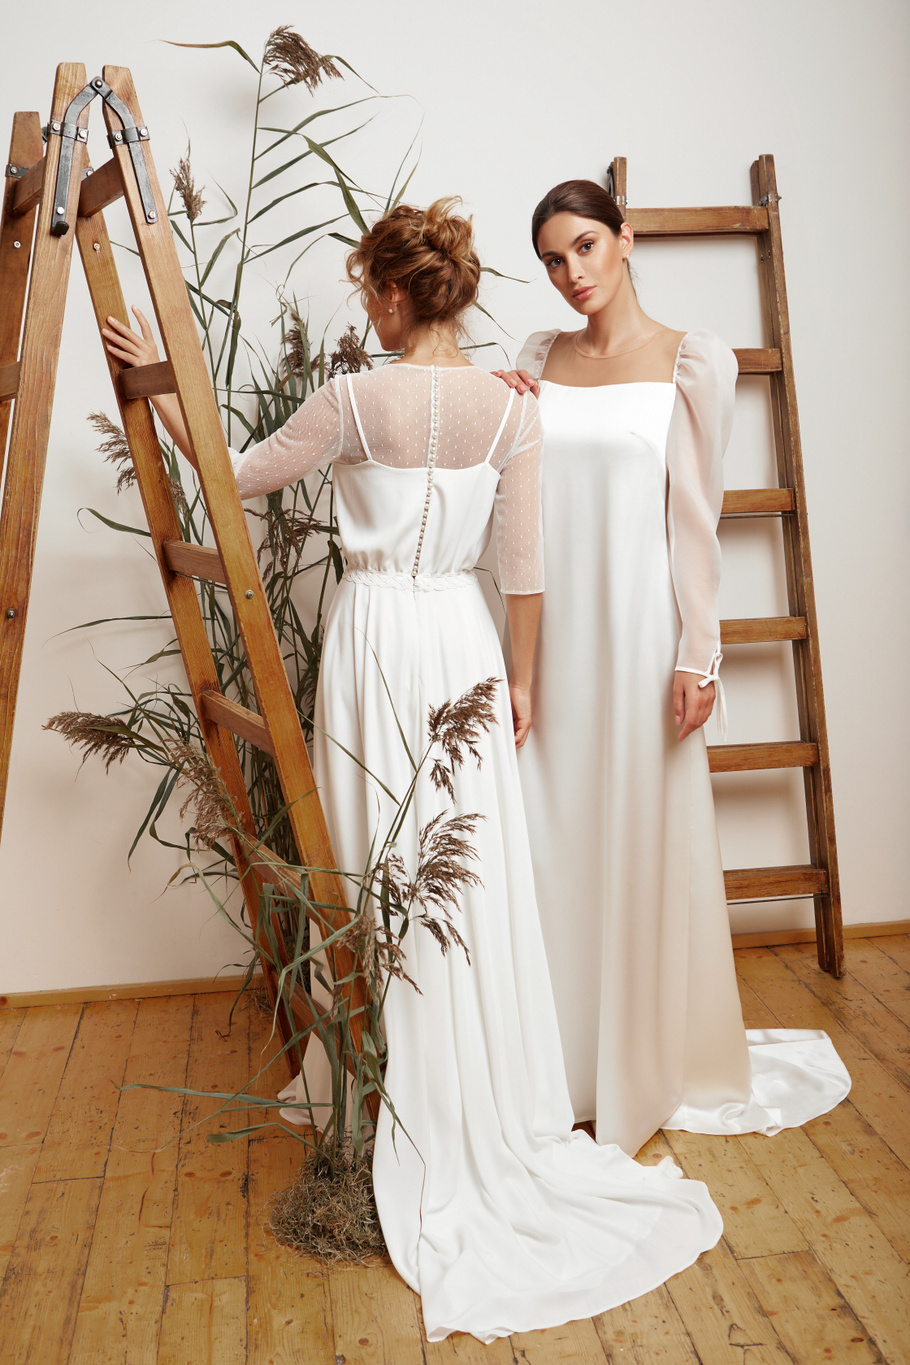 Купить свадебное платье «Фоэр» Мэрри Марк из коллекции 2020 года в Ярославле